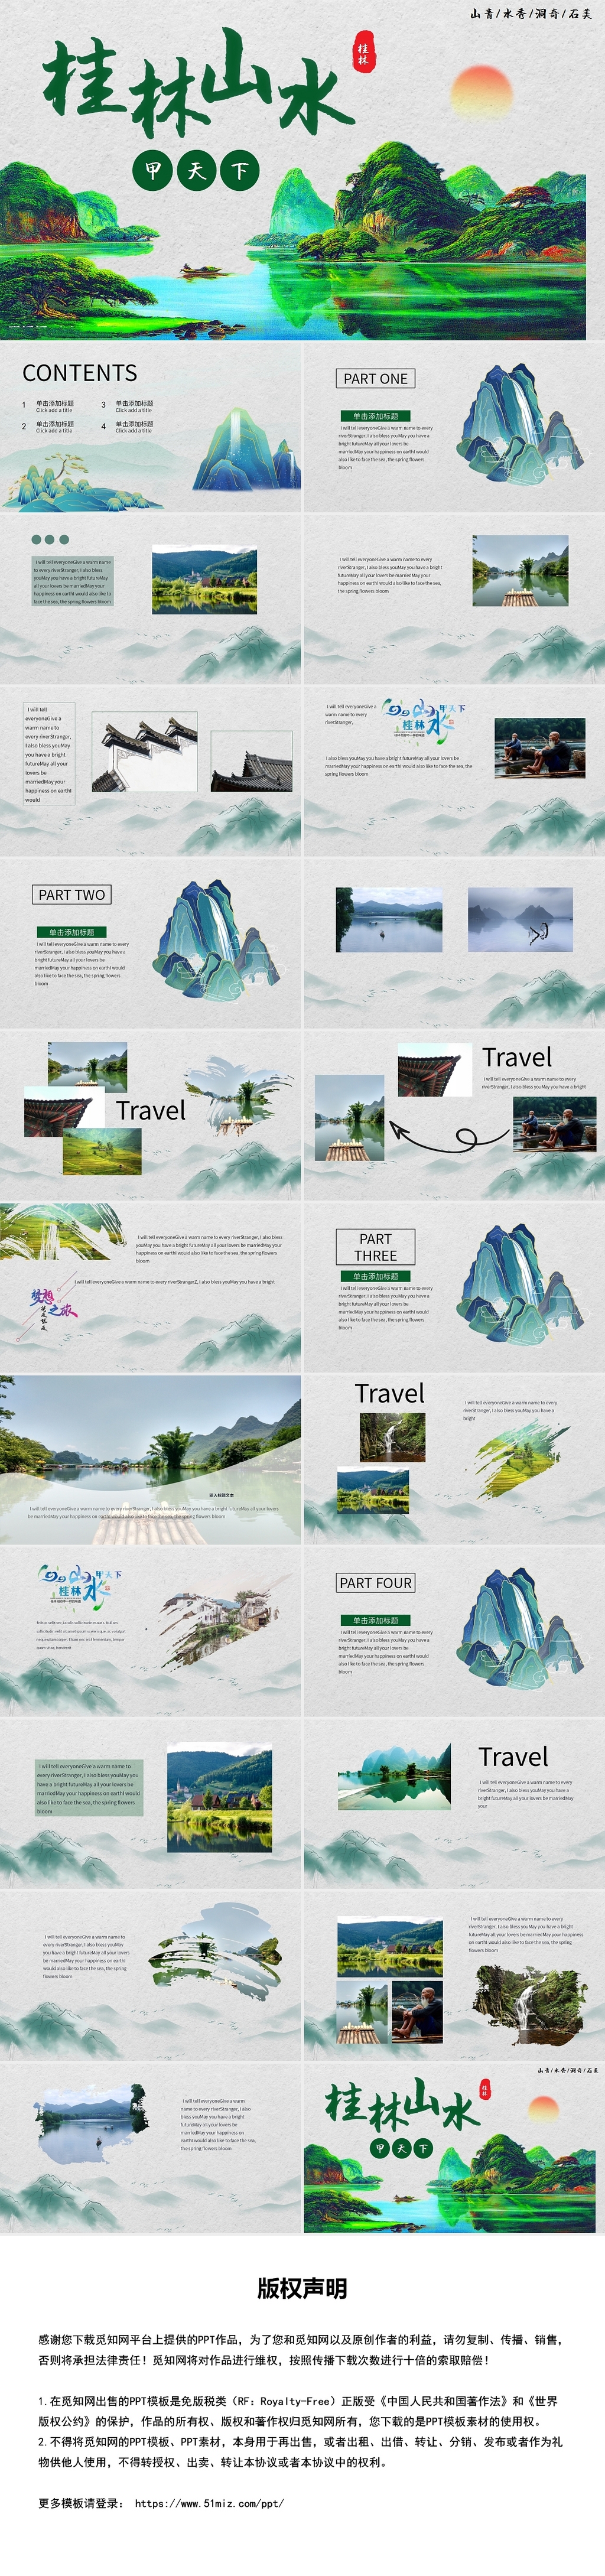 绿色山水画风格桂林山水甲天下旅游文化PPT模板桂林山水旅游画册